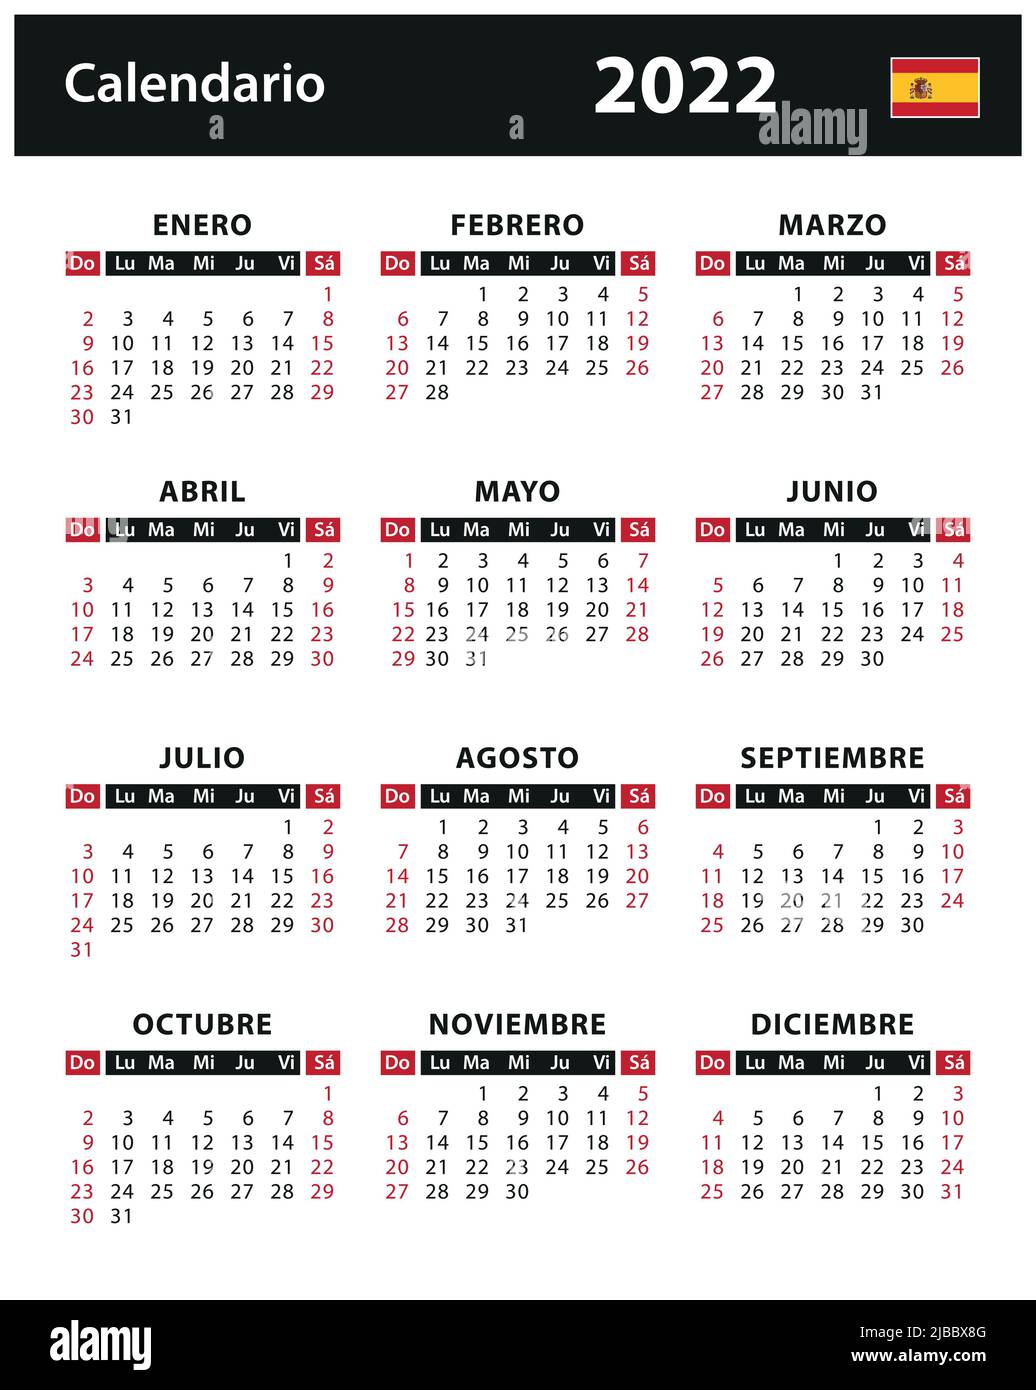 2022 Calendar - vector stock illustration. Spain, Spanish version | Calendario 2022 - ilustración vectorial de stock. España, versión en español Stock Vector